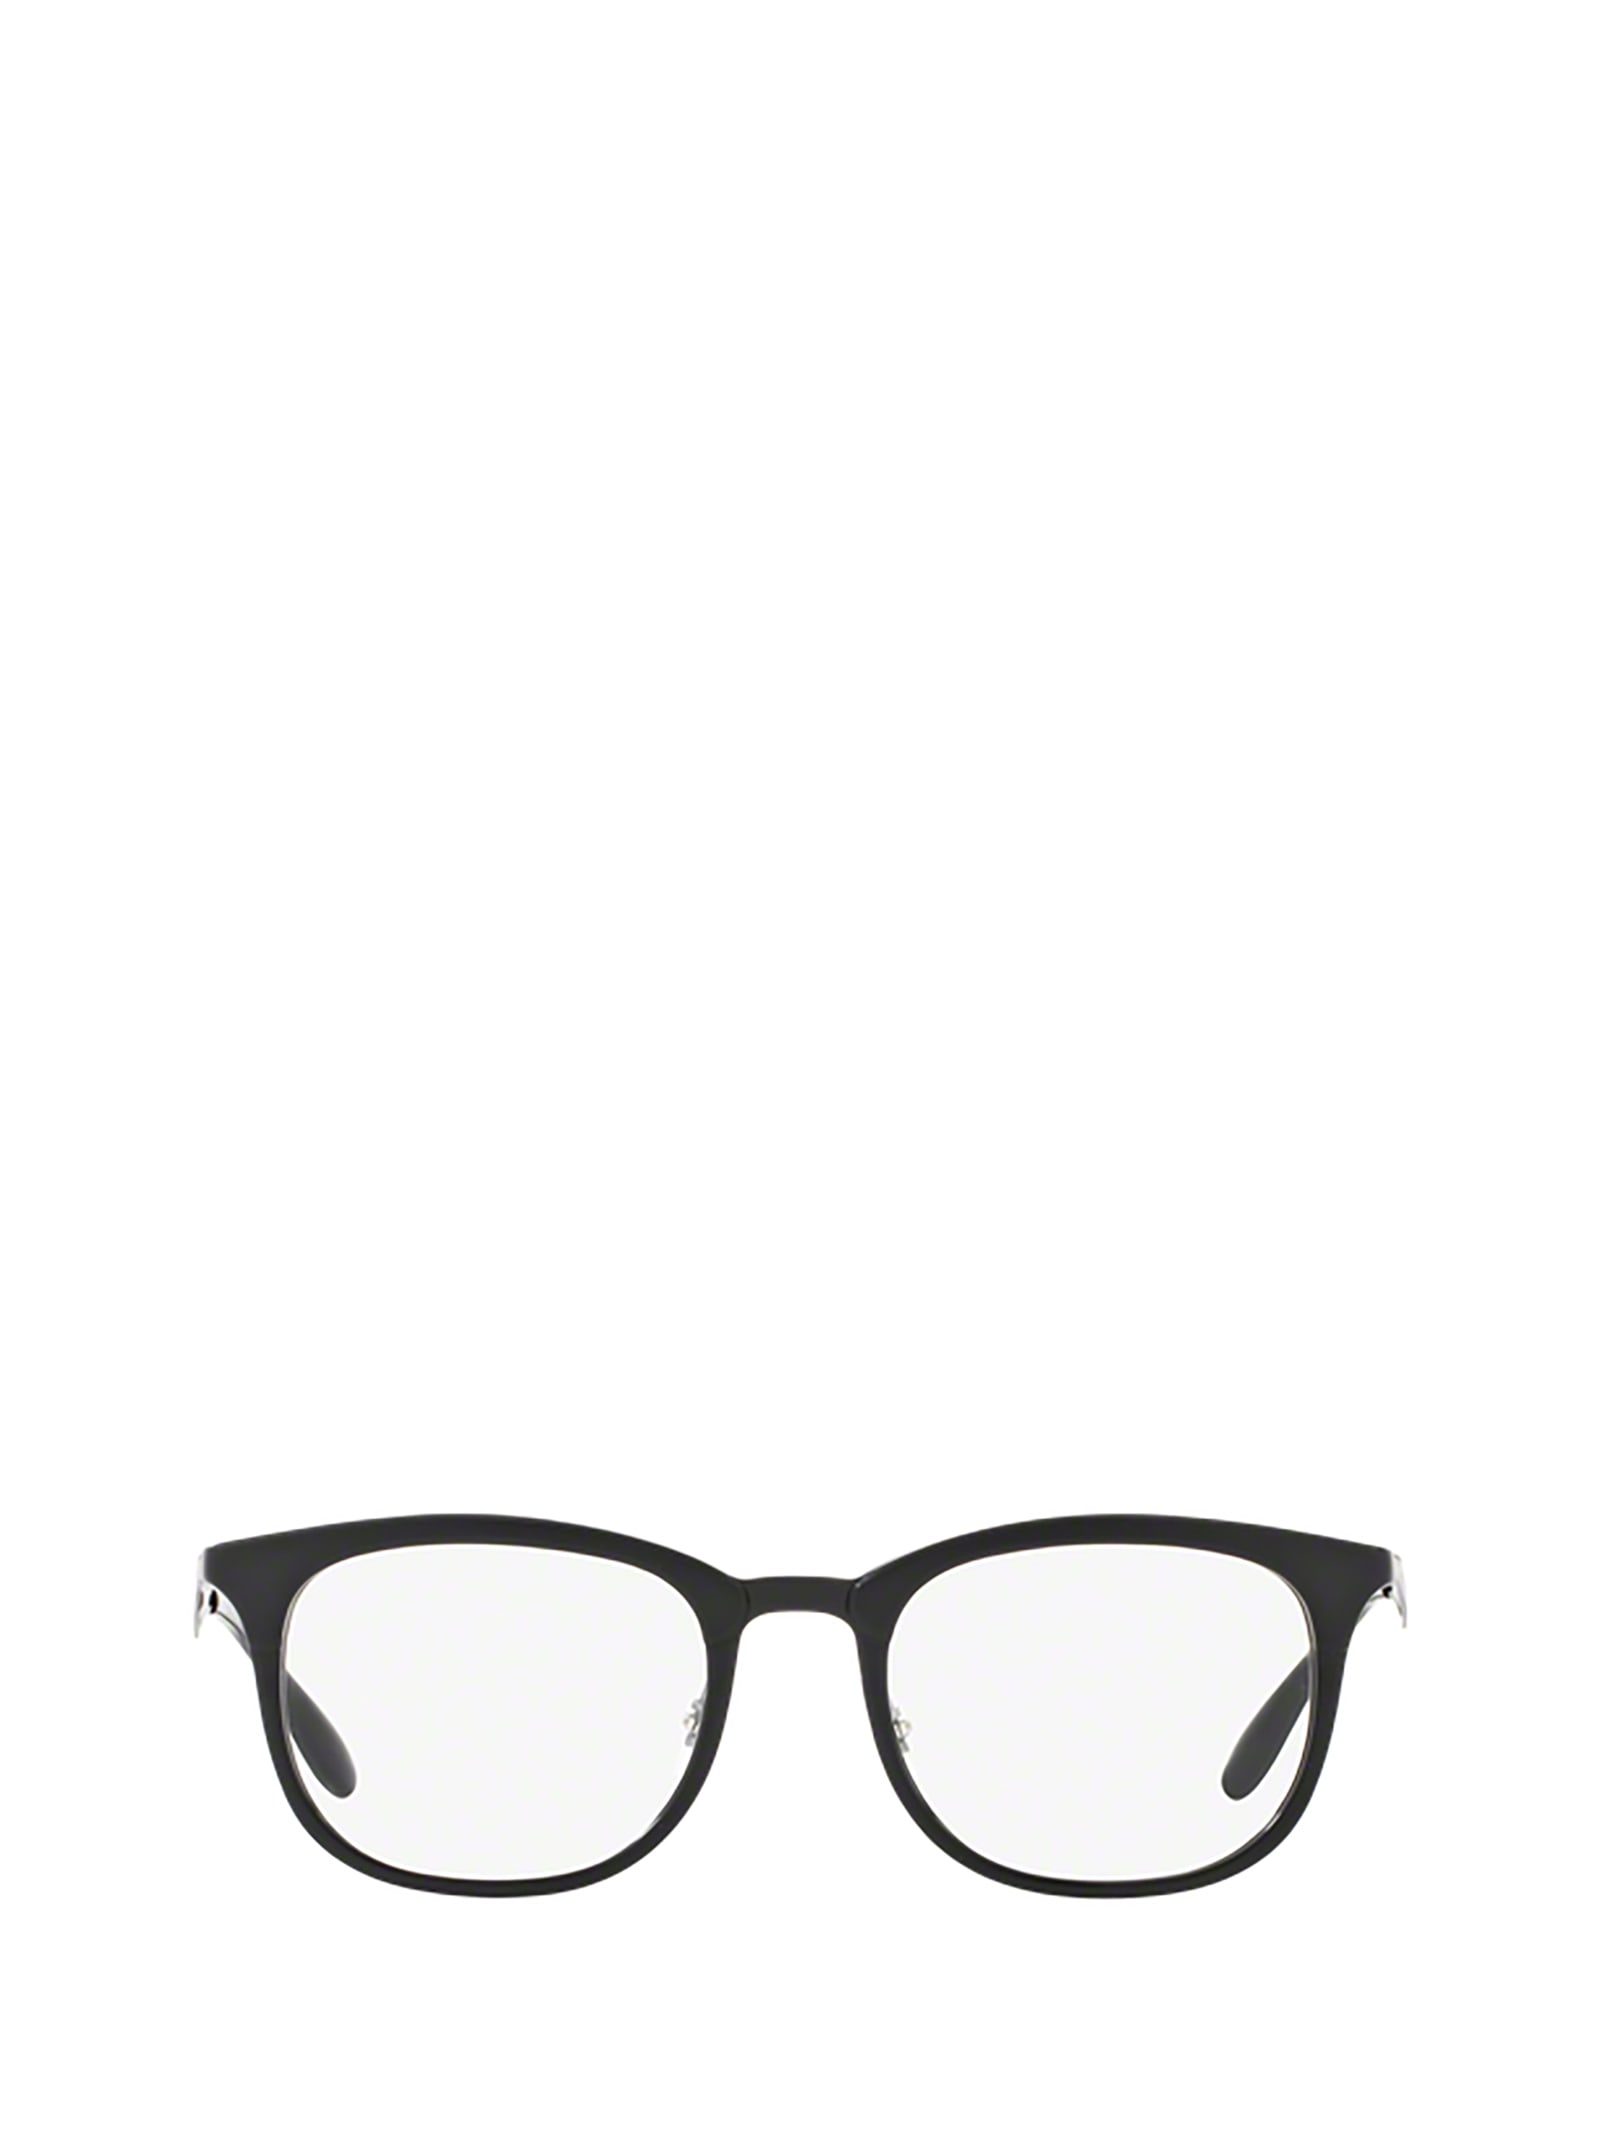 Shop Ray Ban Rx7112 Black/matte Black Glasses